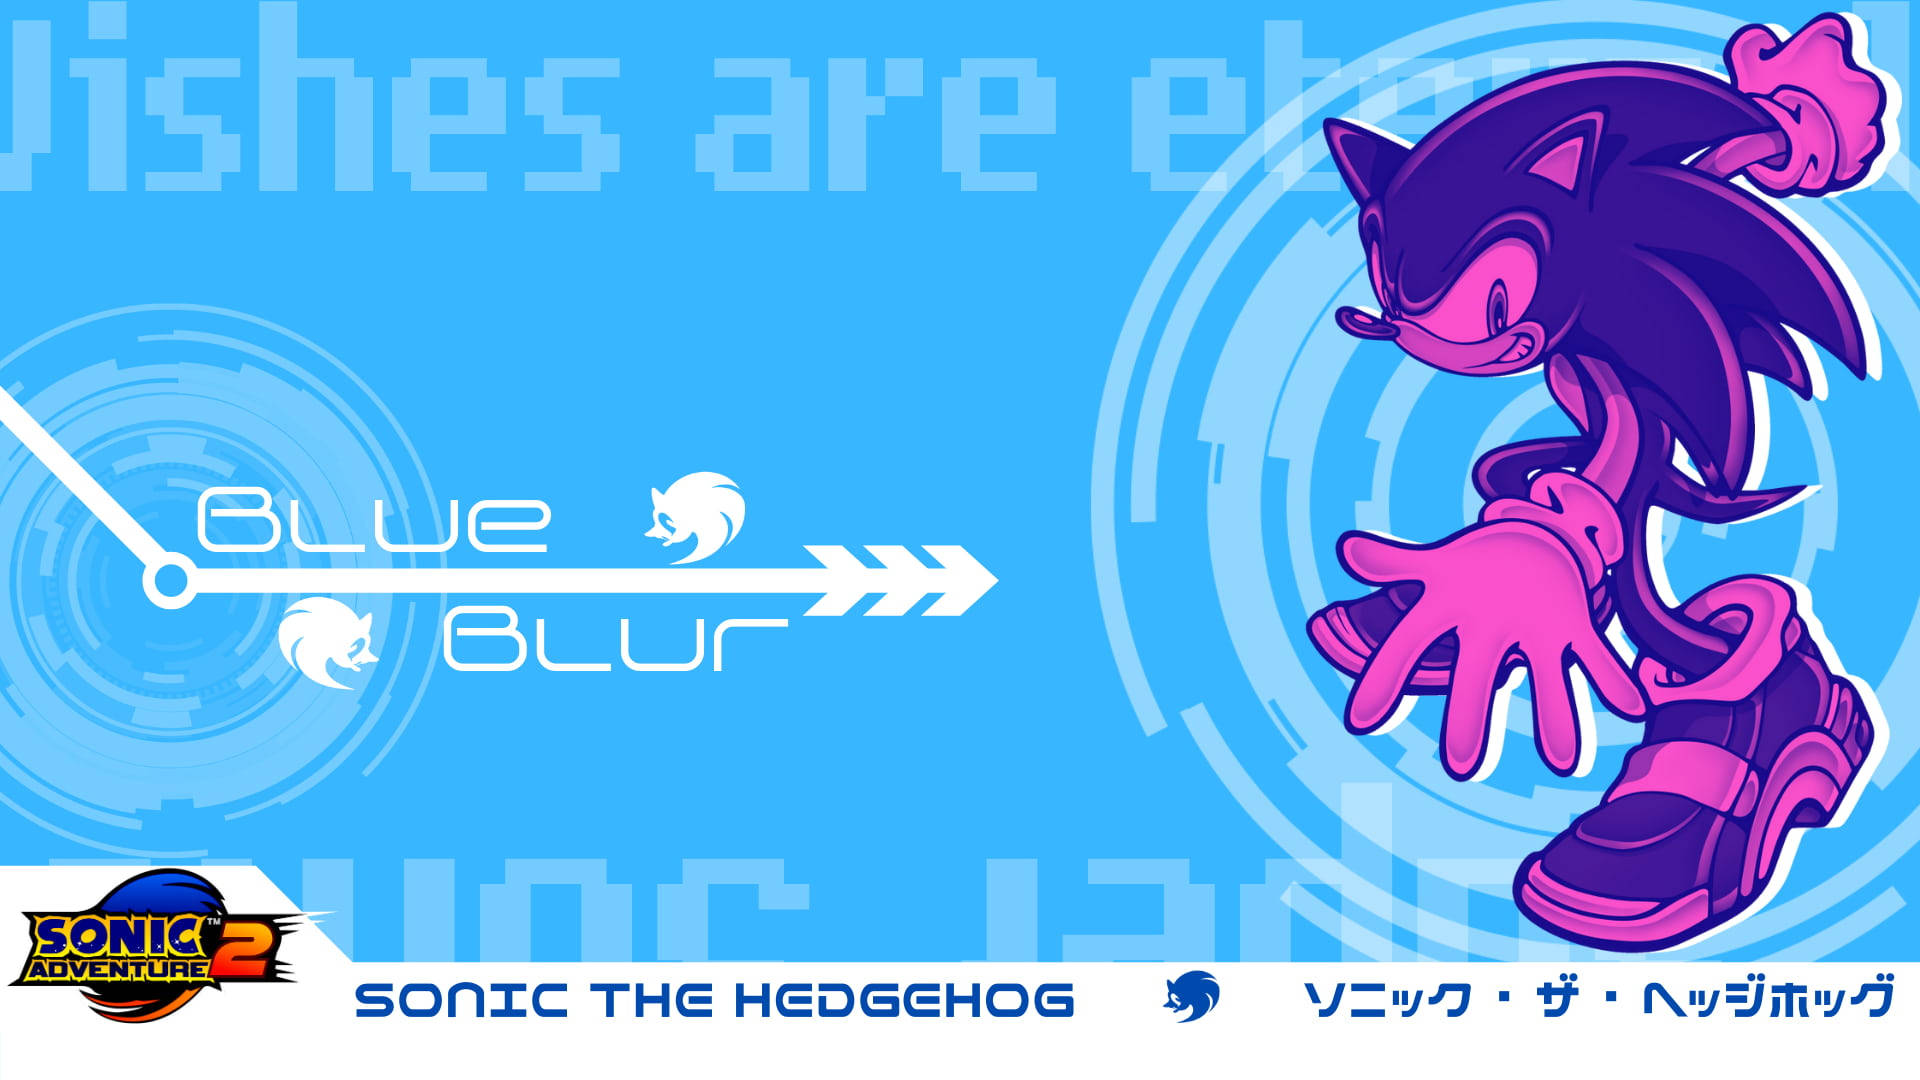 Artevetorial Do Sonic The Hedgehog. Papel de Parede